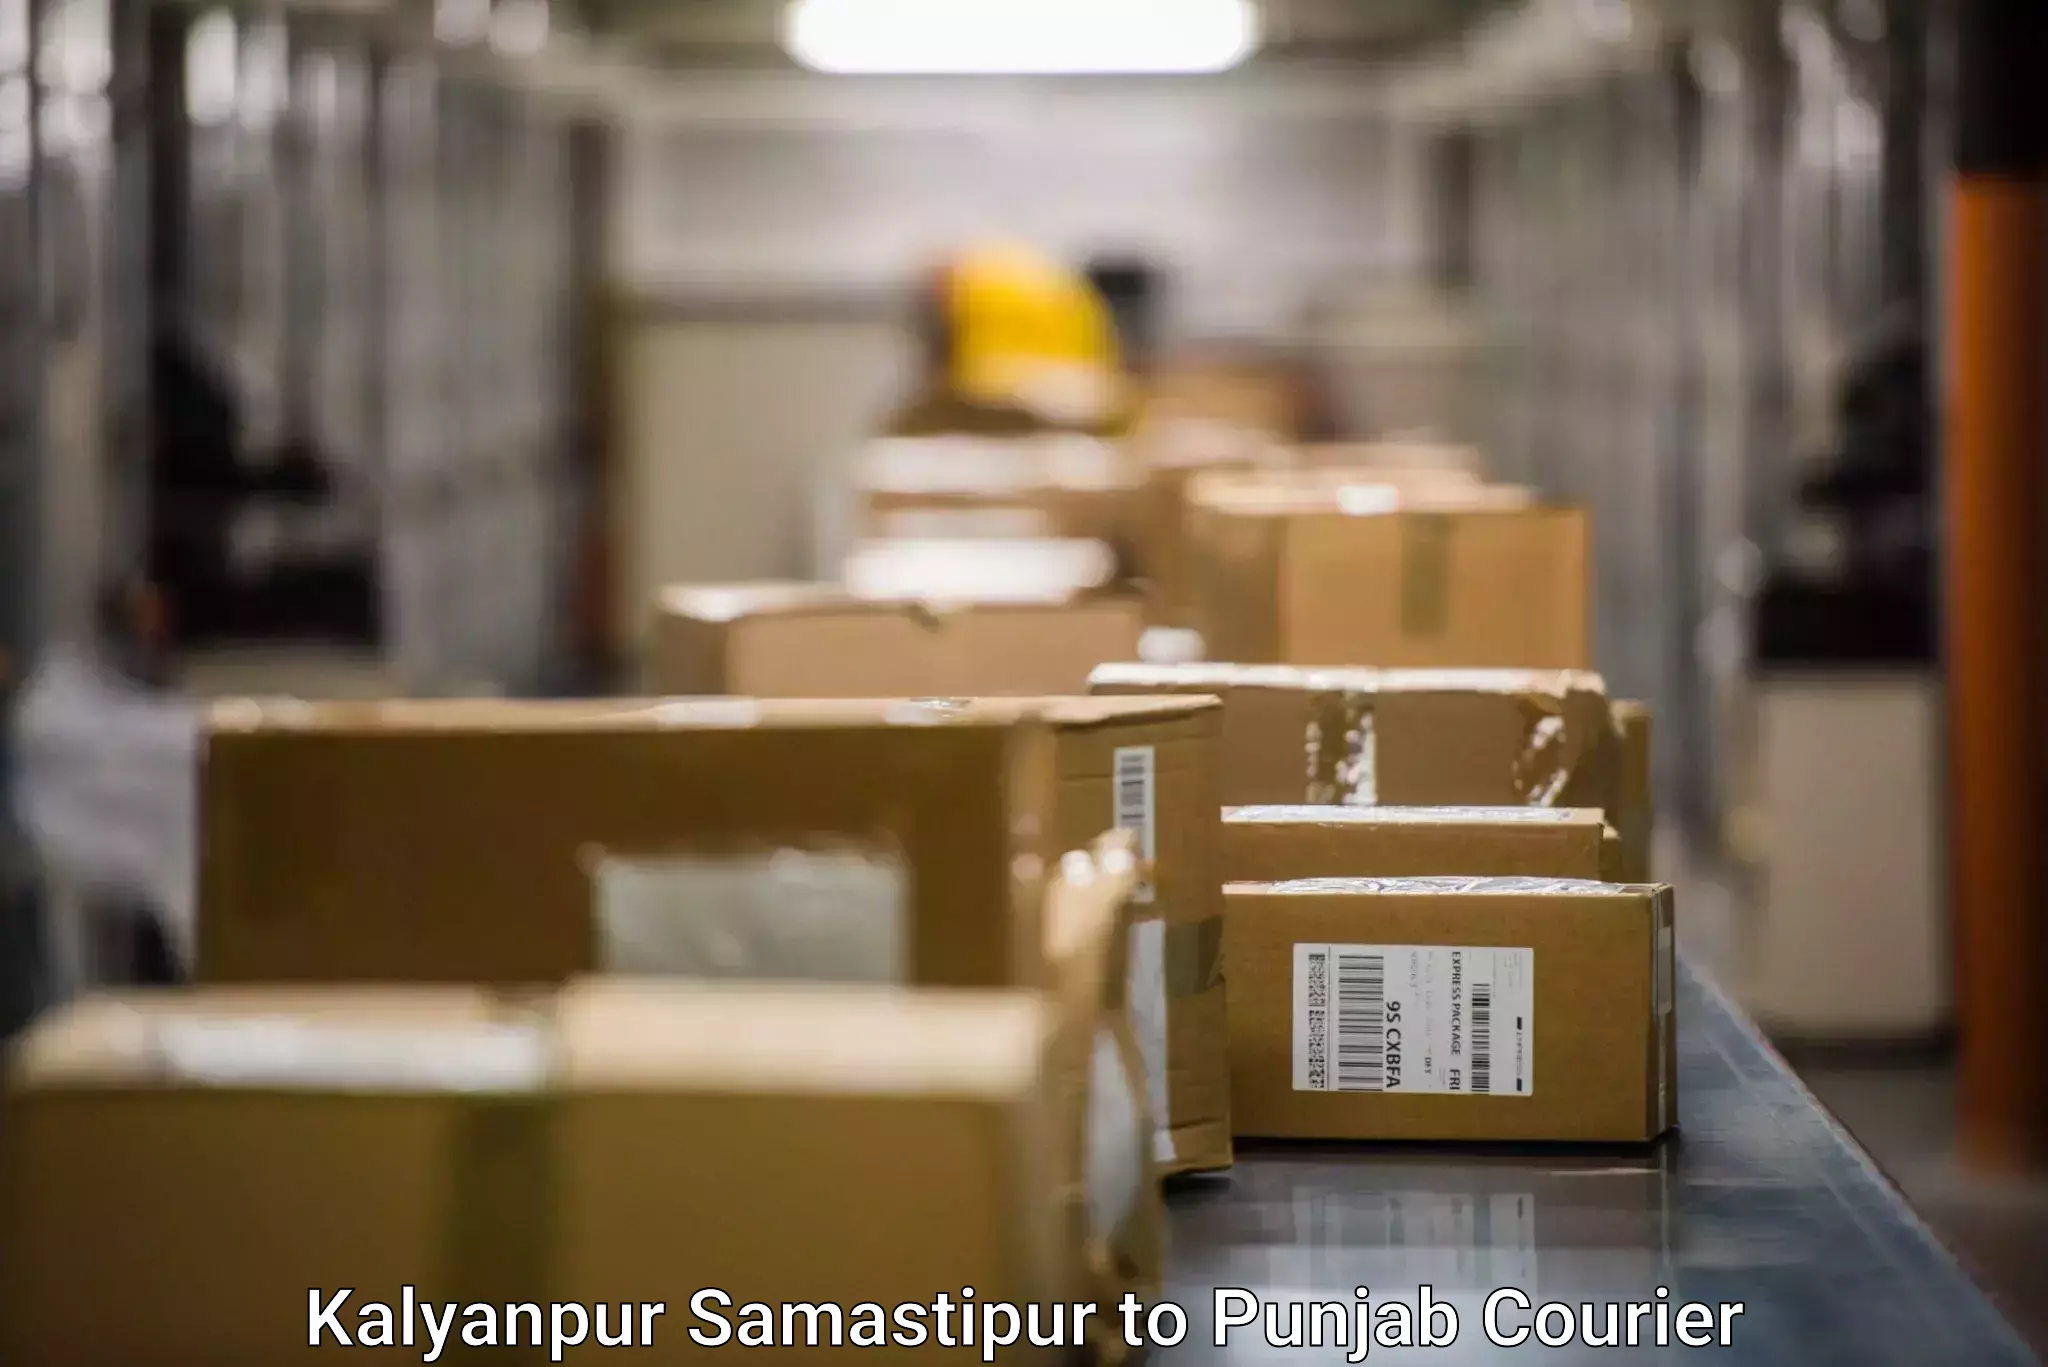 Simplified shipping solutions Kalyanpur Samastipur to Punjab